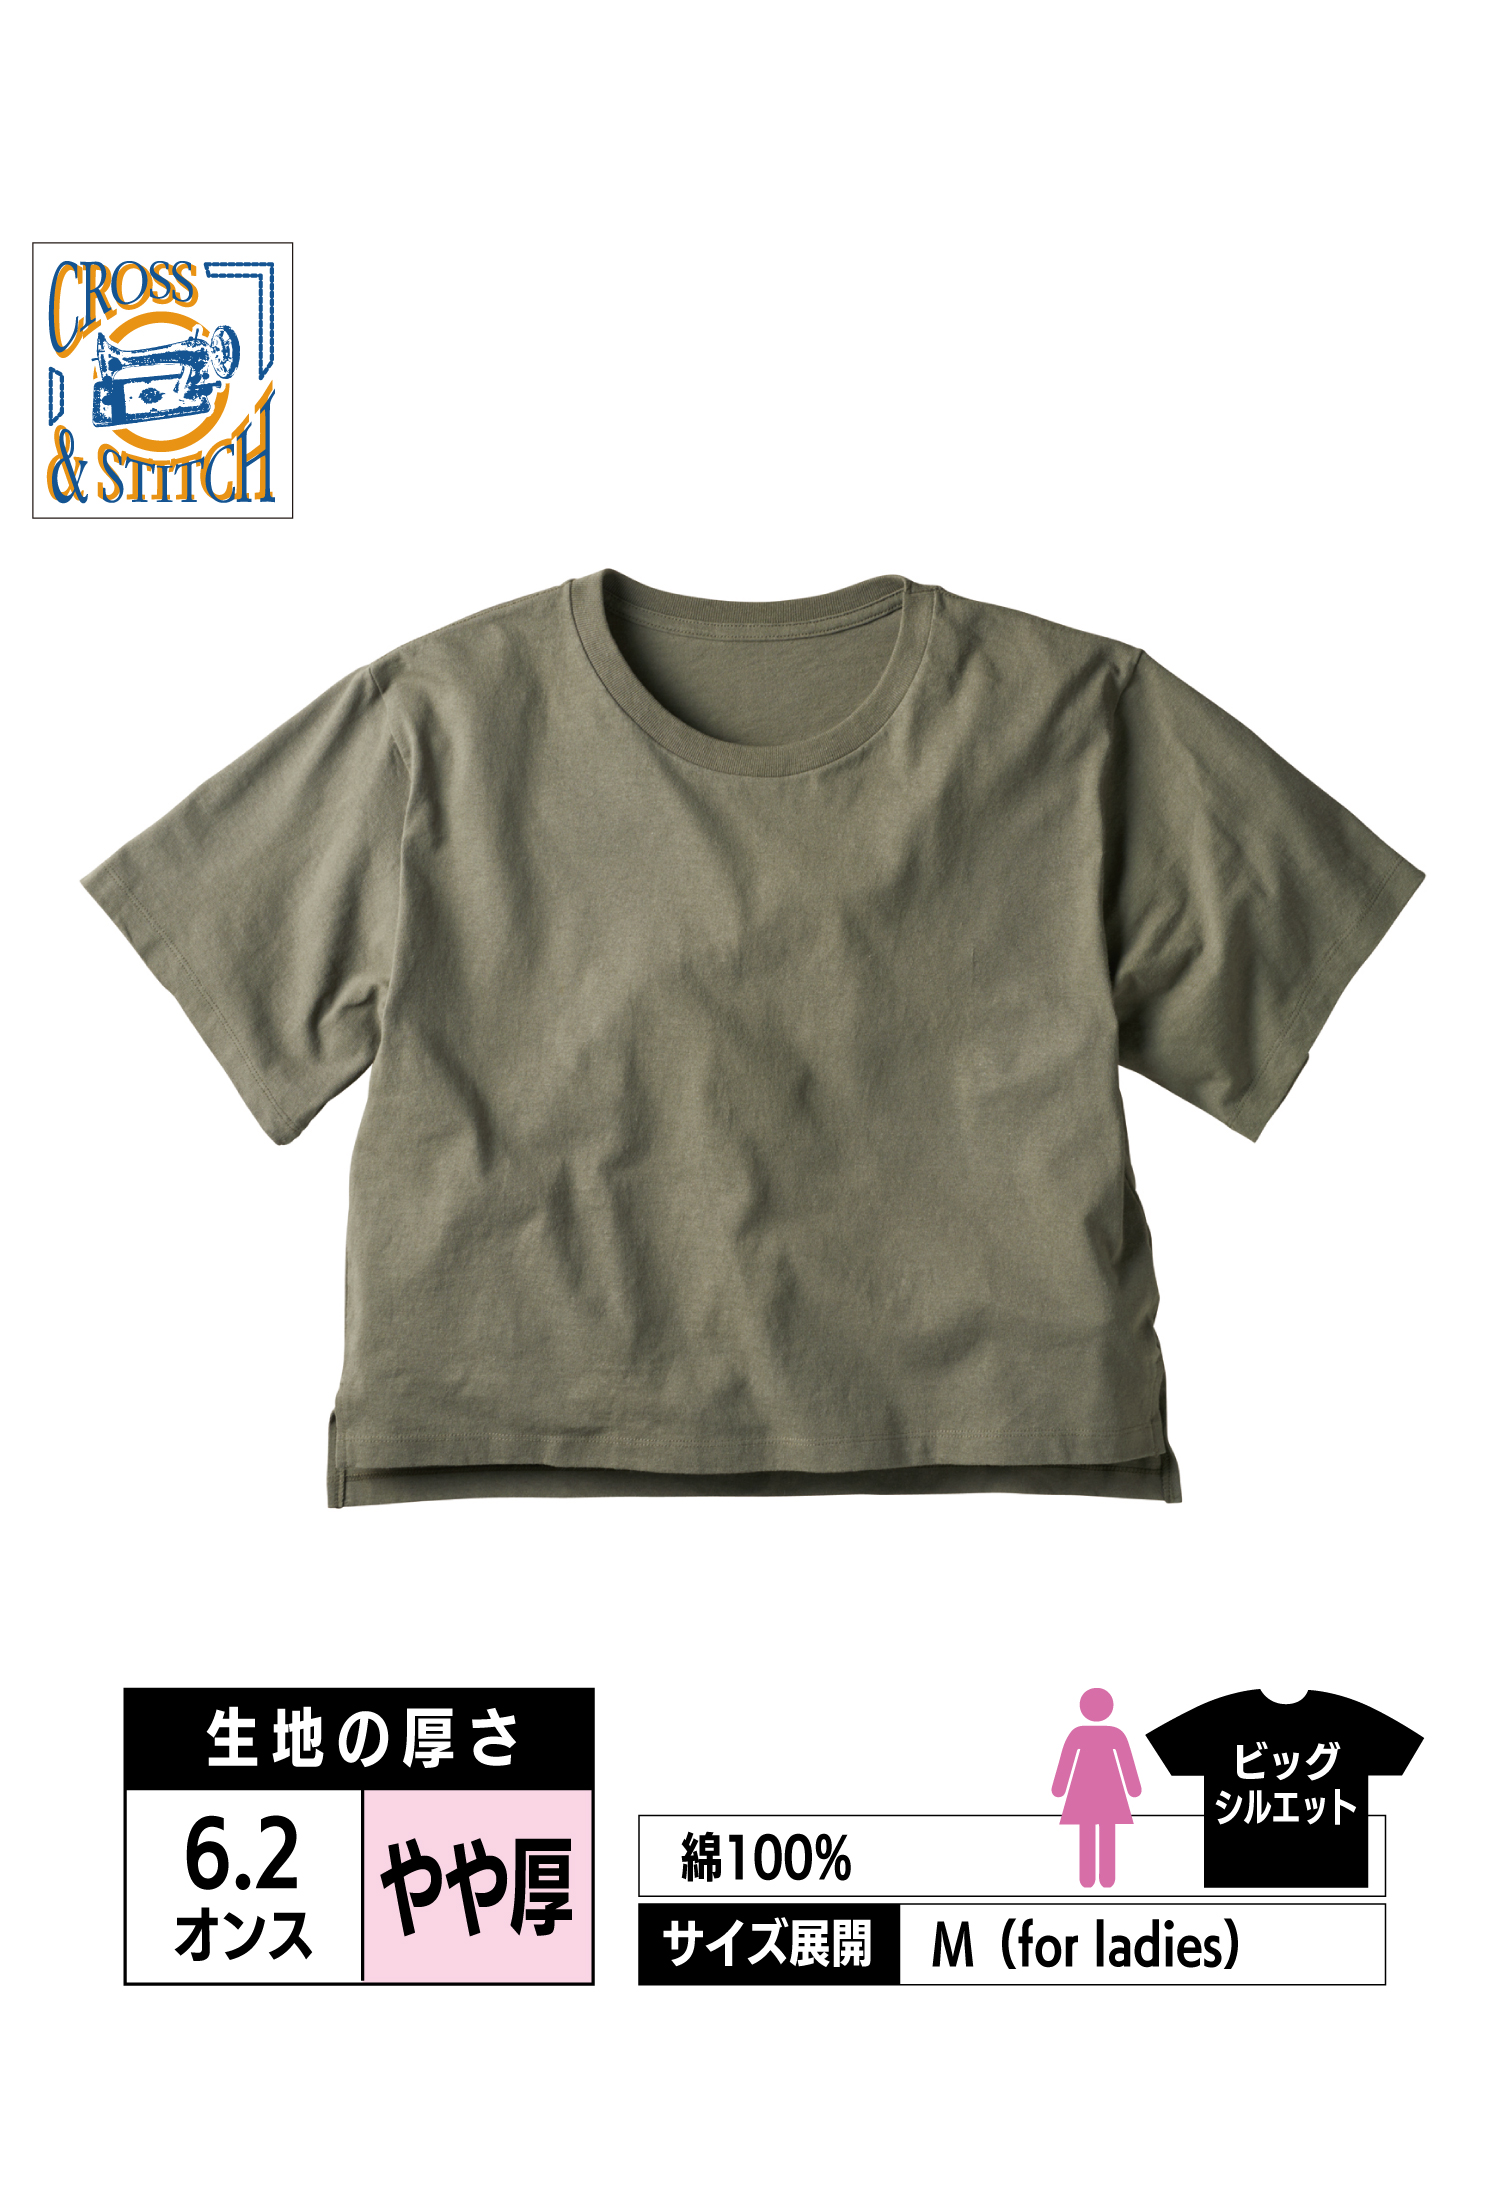 OE1301｜オープンエンド マックスウェイト ウィメンズオーバーTシャツ【全5色】CROSS&STITCH